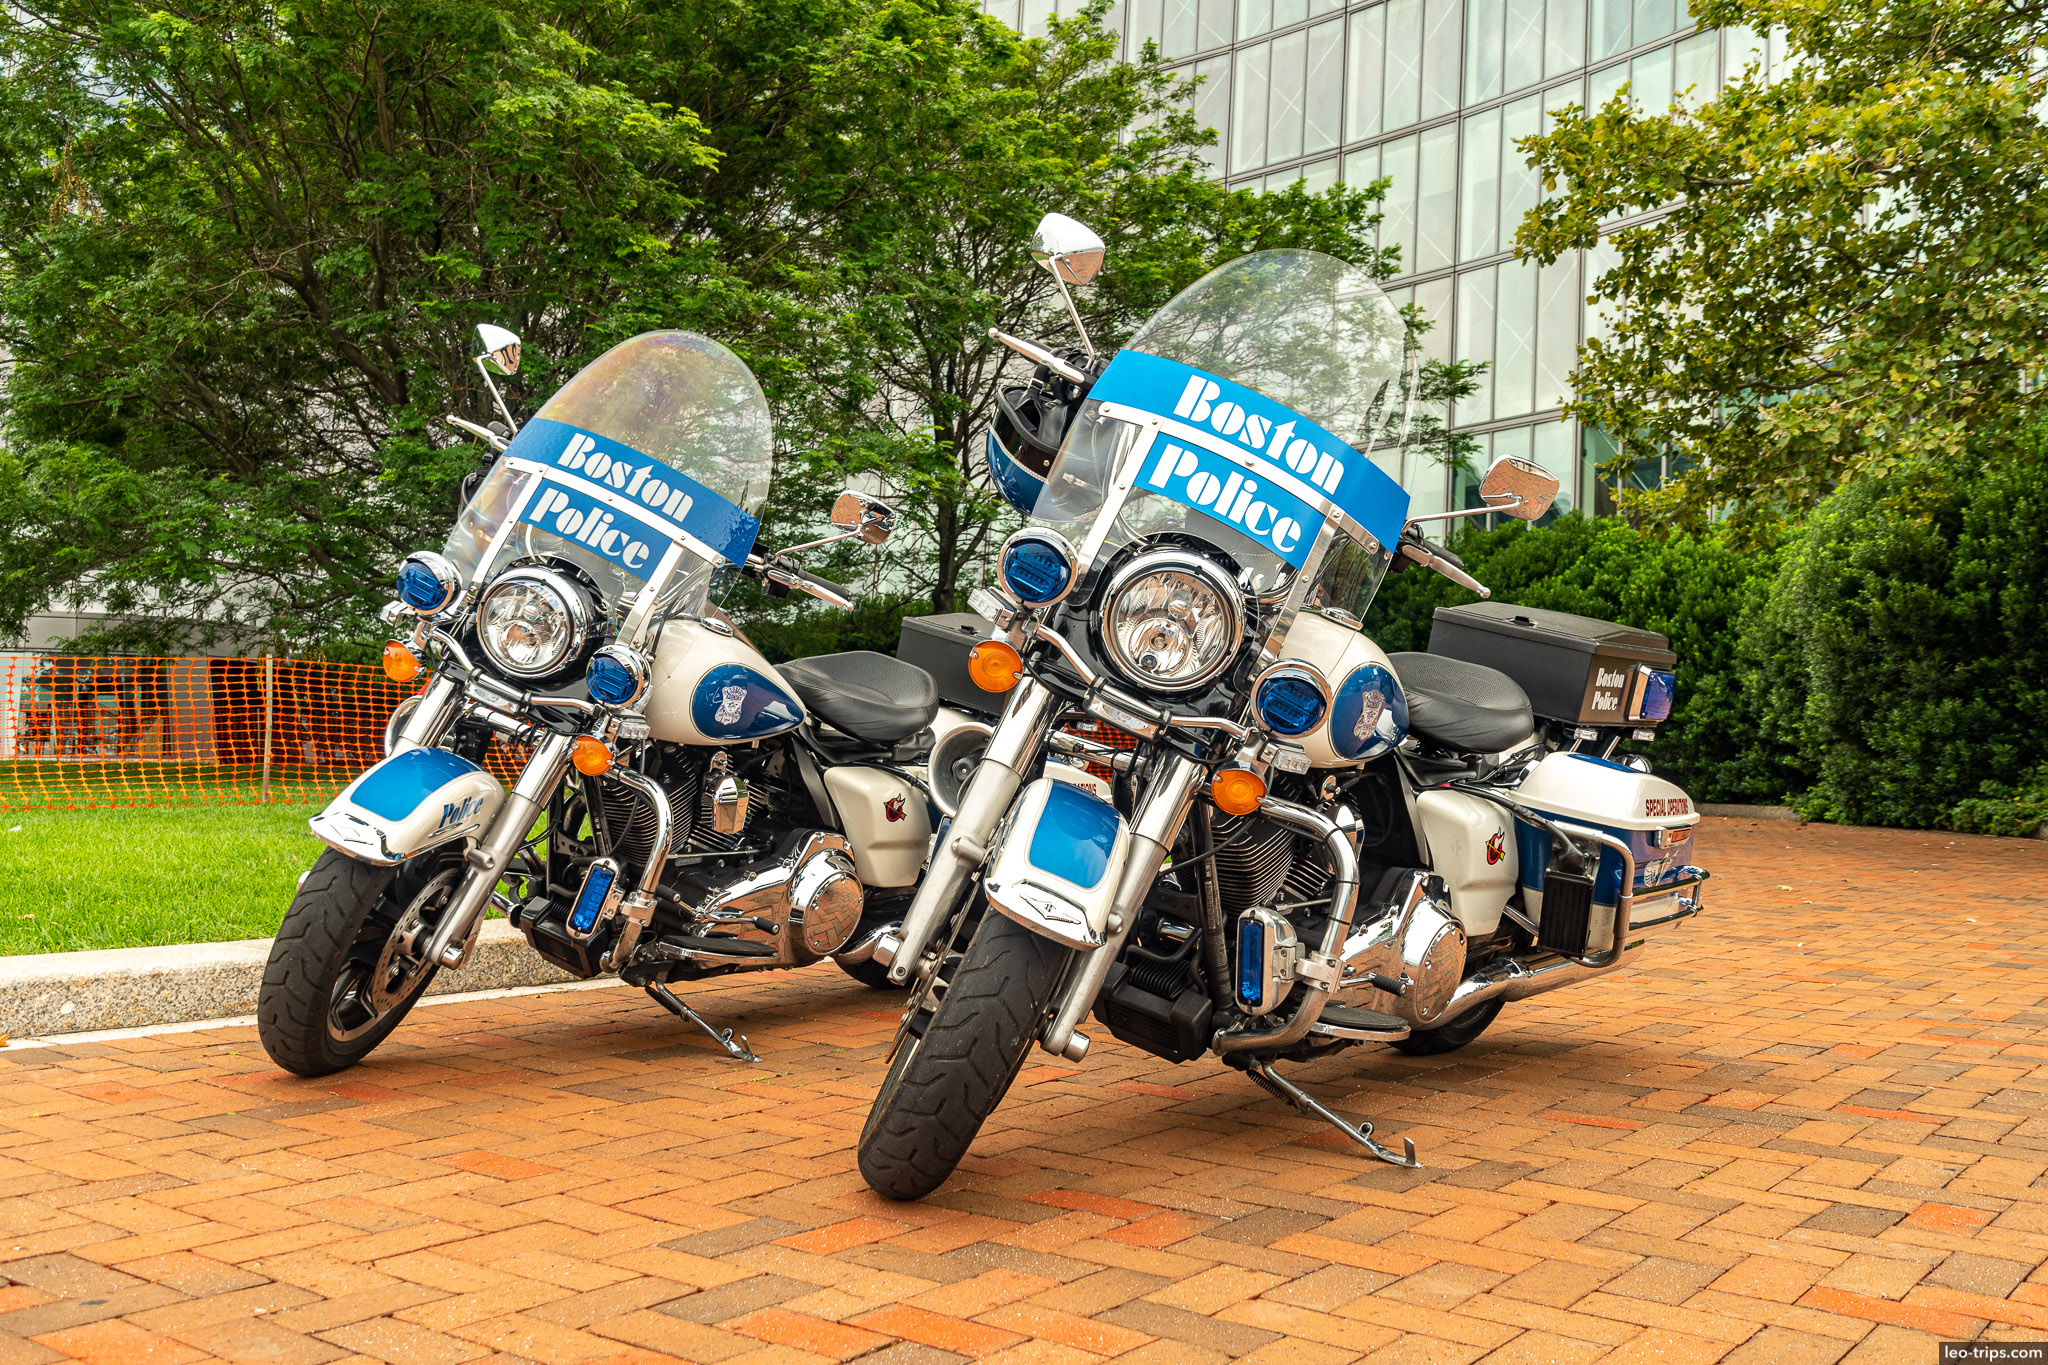 boston police bikes boston